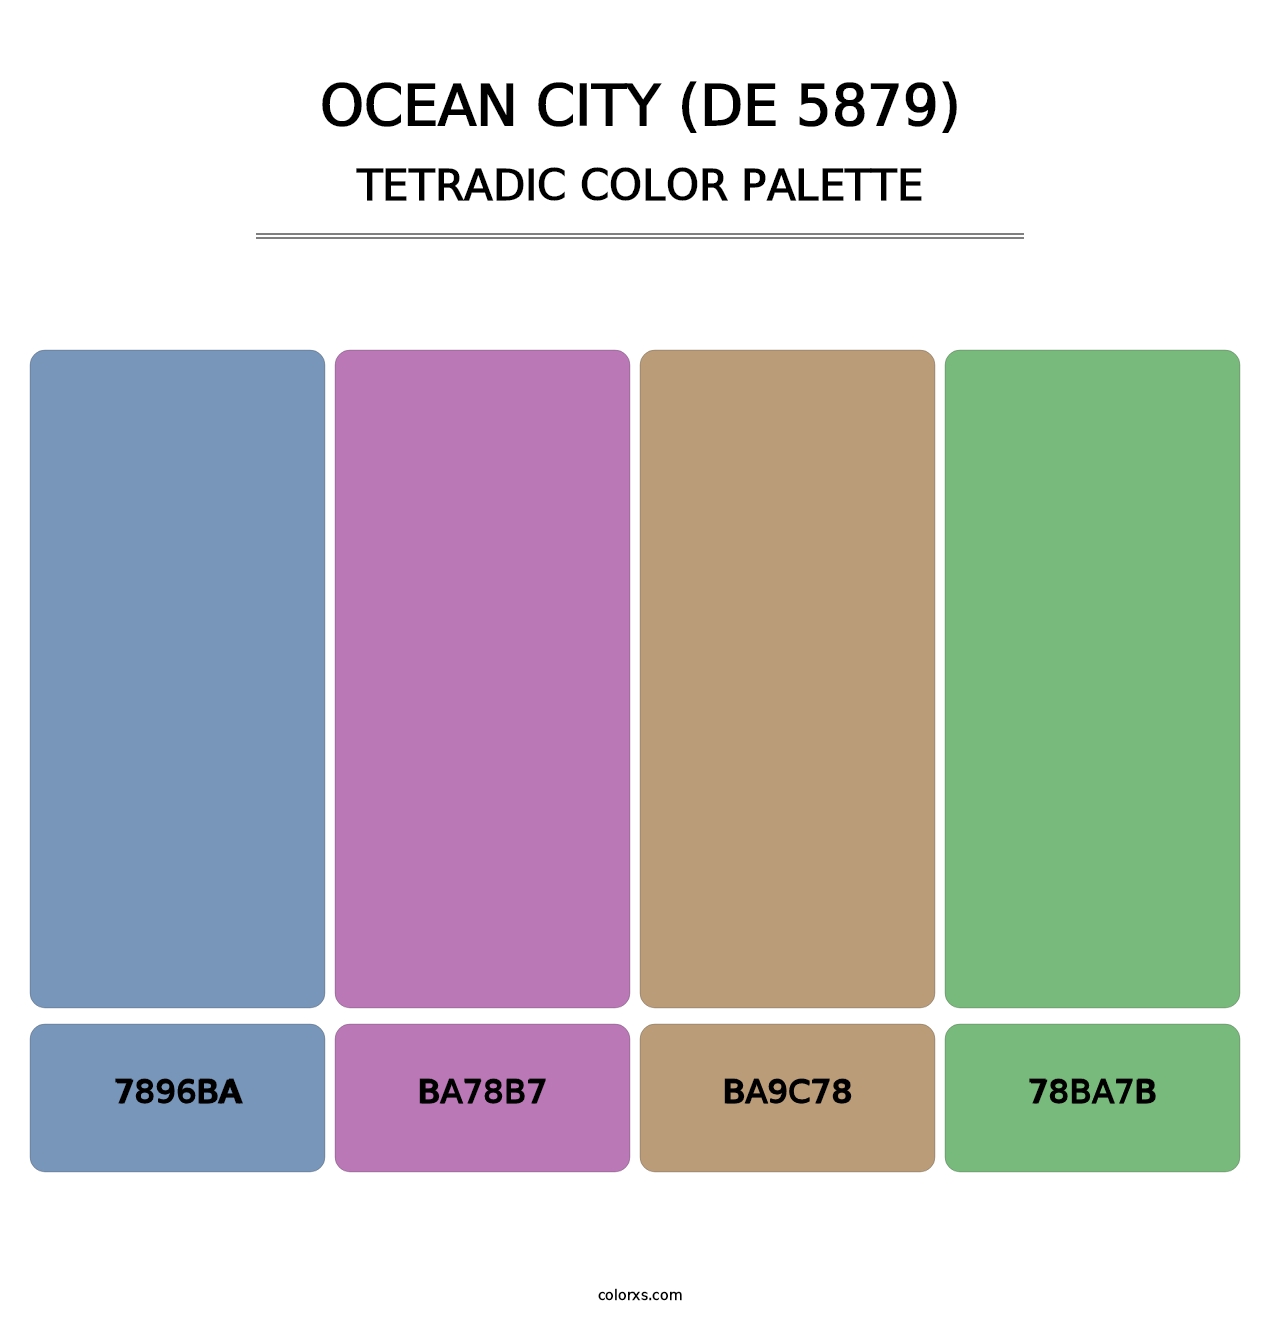 Ocean City (DE 5879) - Tetradic Color Palette